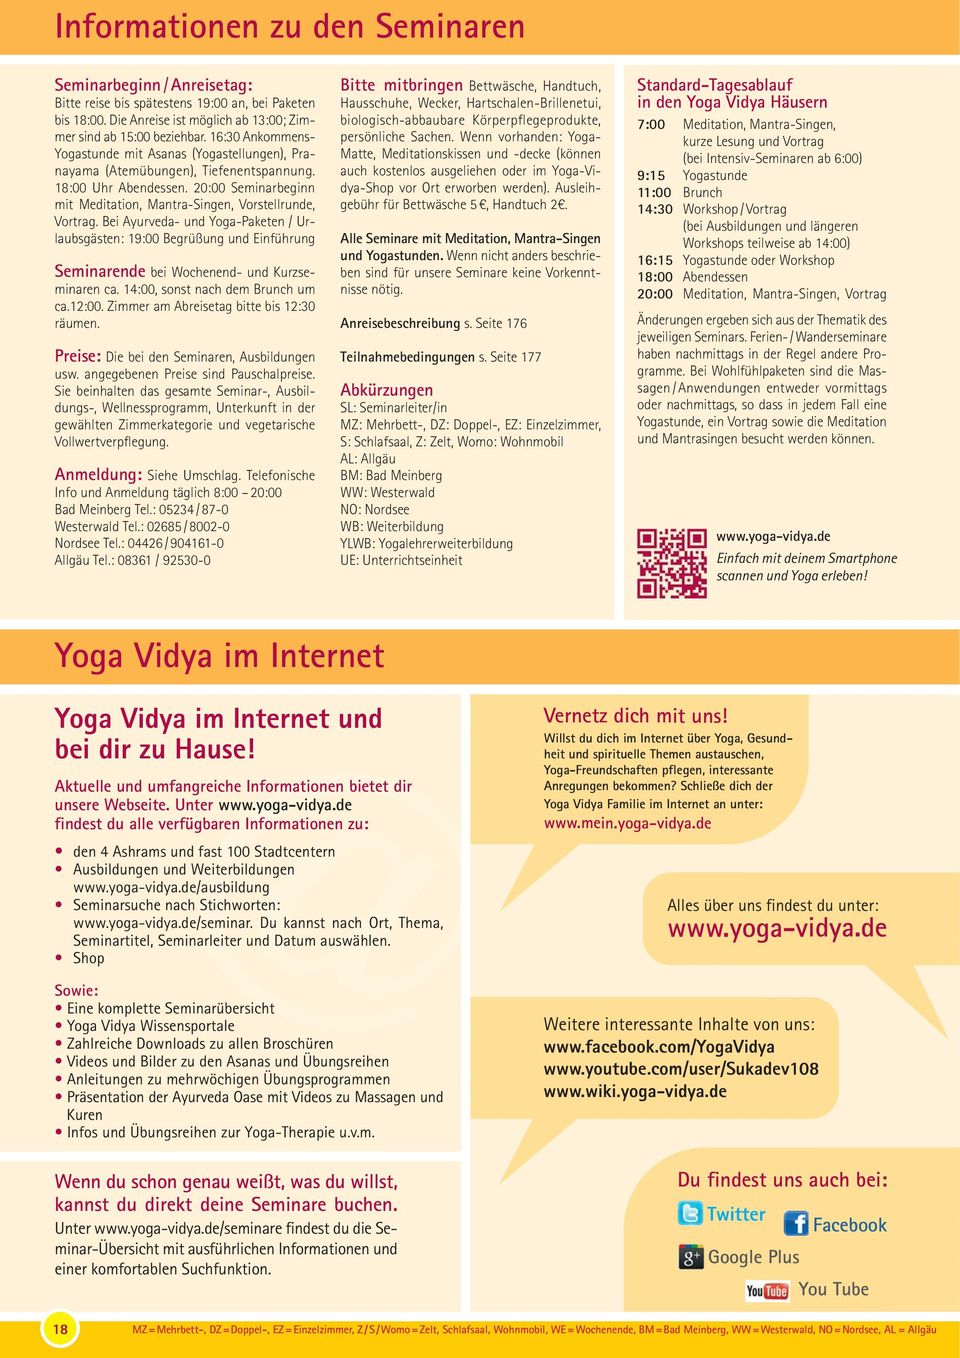 Bei Ayurveda- und Yoga-Paketen / Urlaubsgästen: 19:00 Begrüßung und Einführung Seminarende bei Wochenend- und Kurzseminaren ca. 14:00, sonst nach dem Brunch um ca.12:00.